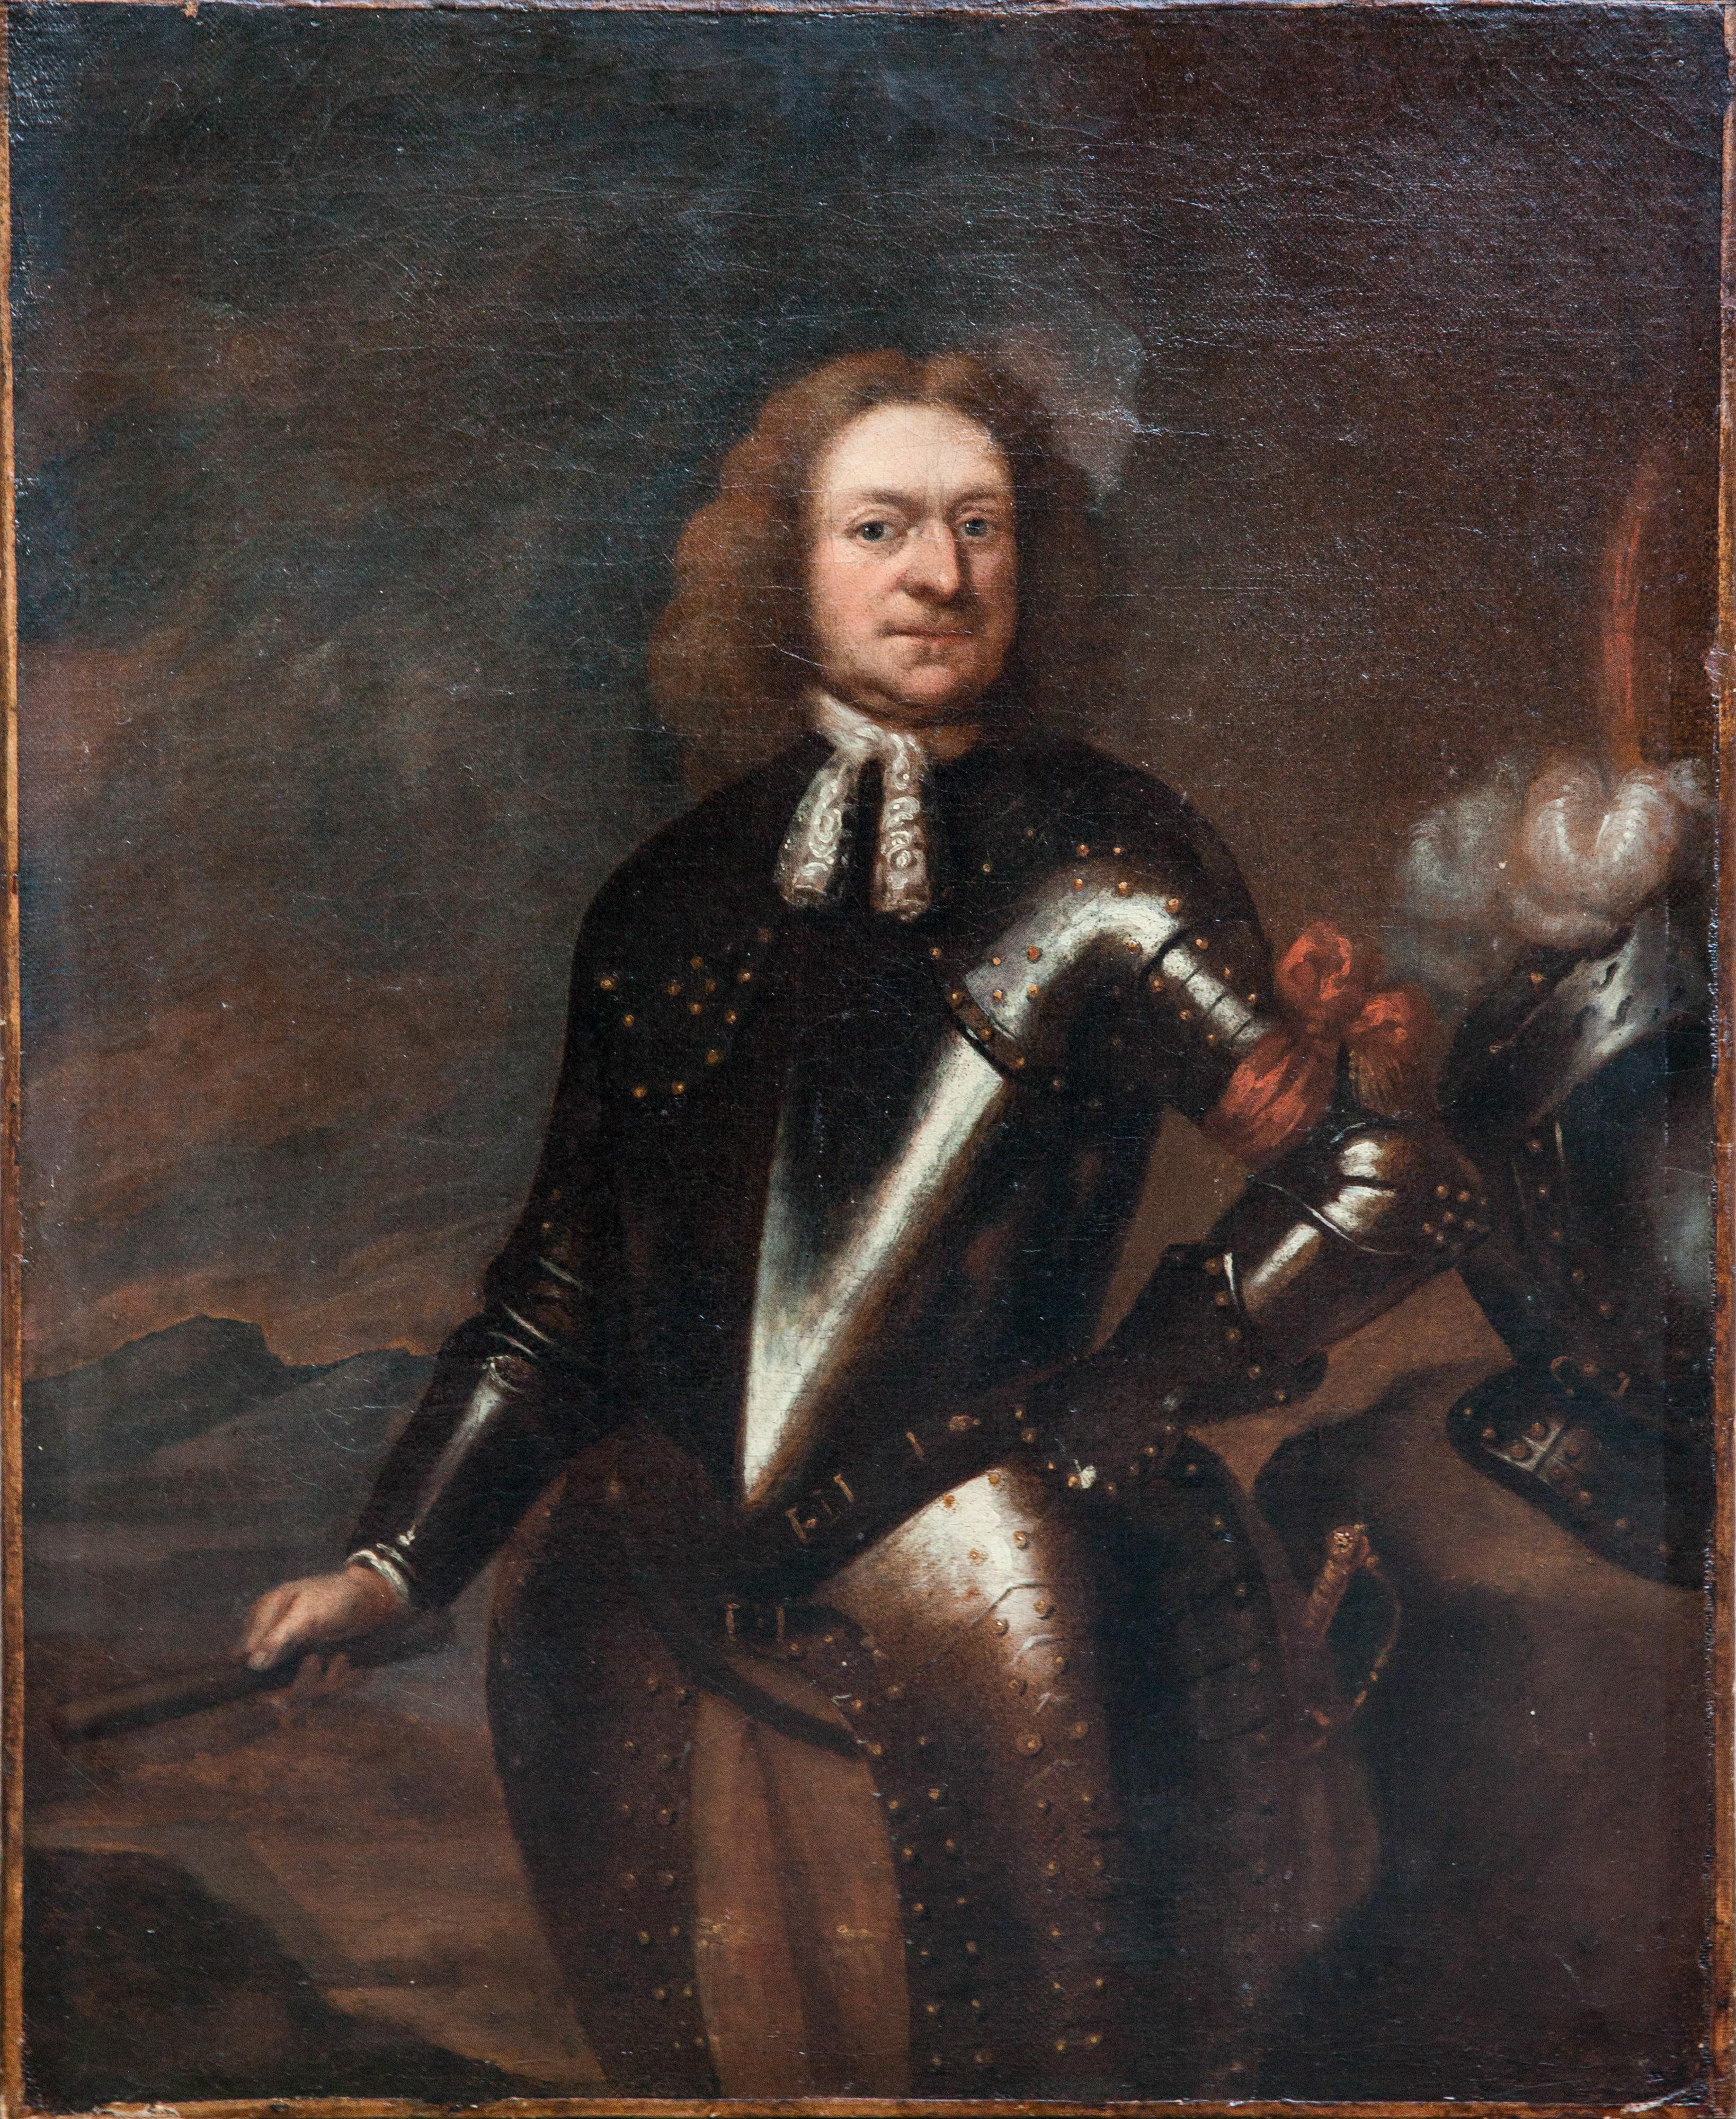 Unknown Portrait Painting - Portrait of Raimondo di Montecuccoli in armor with a marshal's staff. Circa 1660